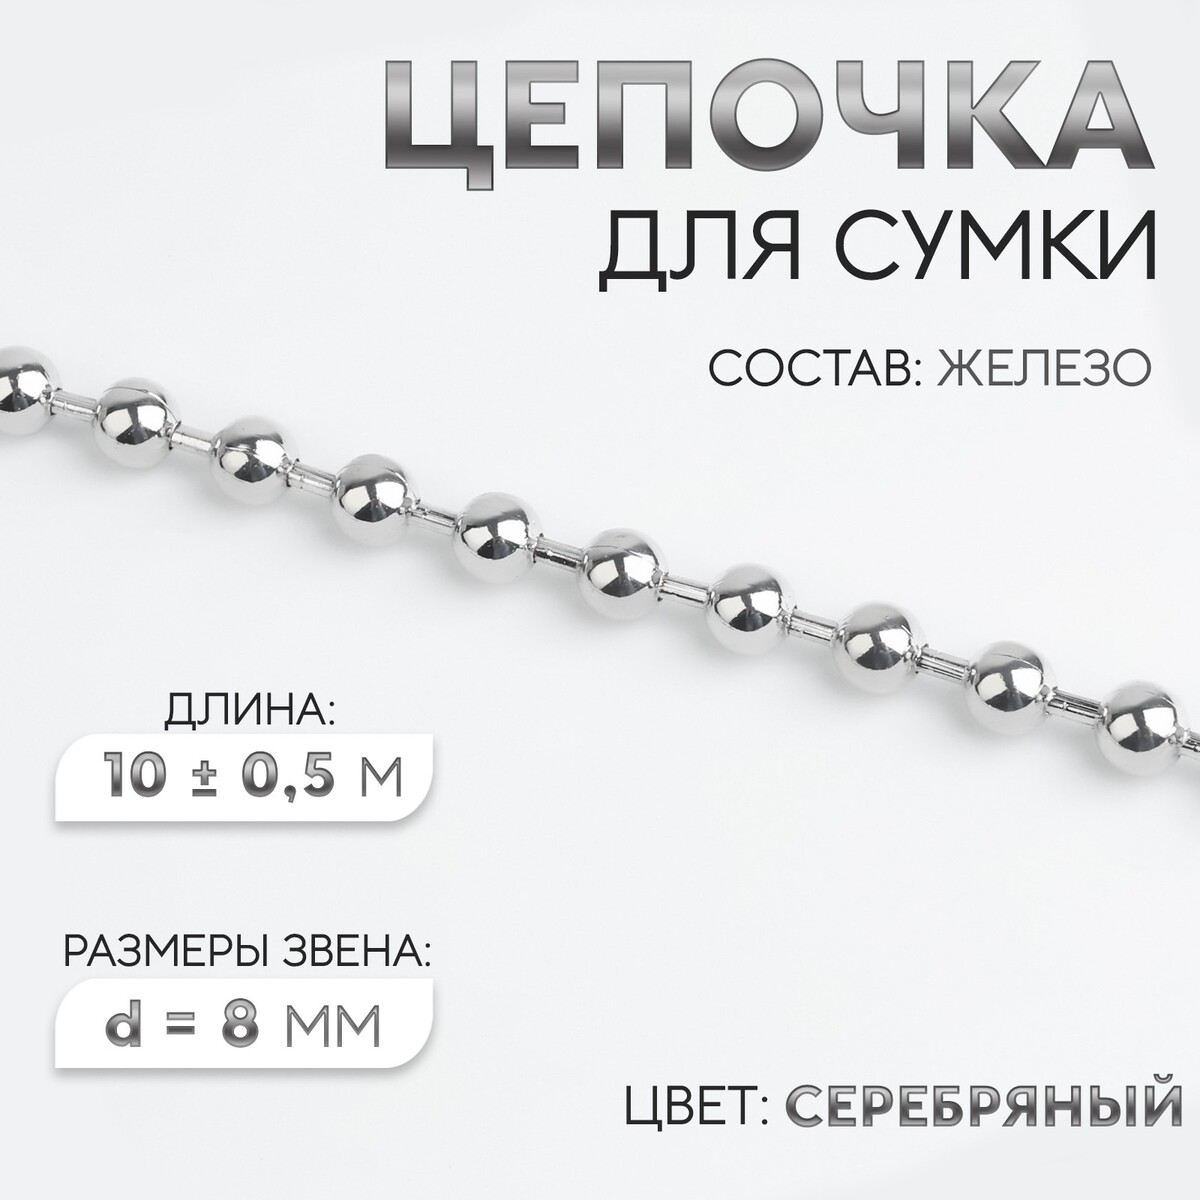 Цепочка для сумки, железная, d = 8 мм, 10 ± 0,5 м, цвет серебряный цепочка для сумки железная 6 2 × 8 8 мм 10 ± 0 5 м серебряный